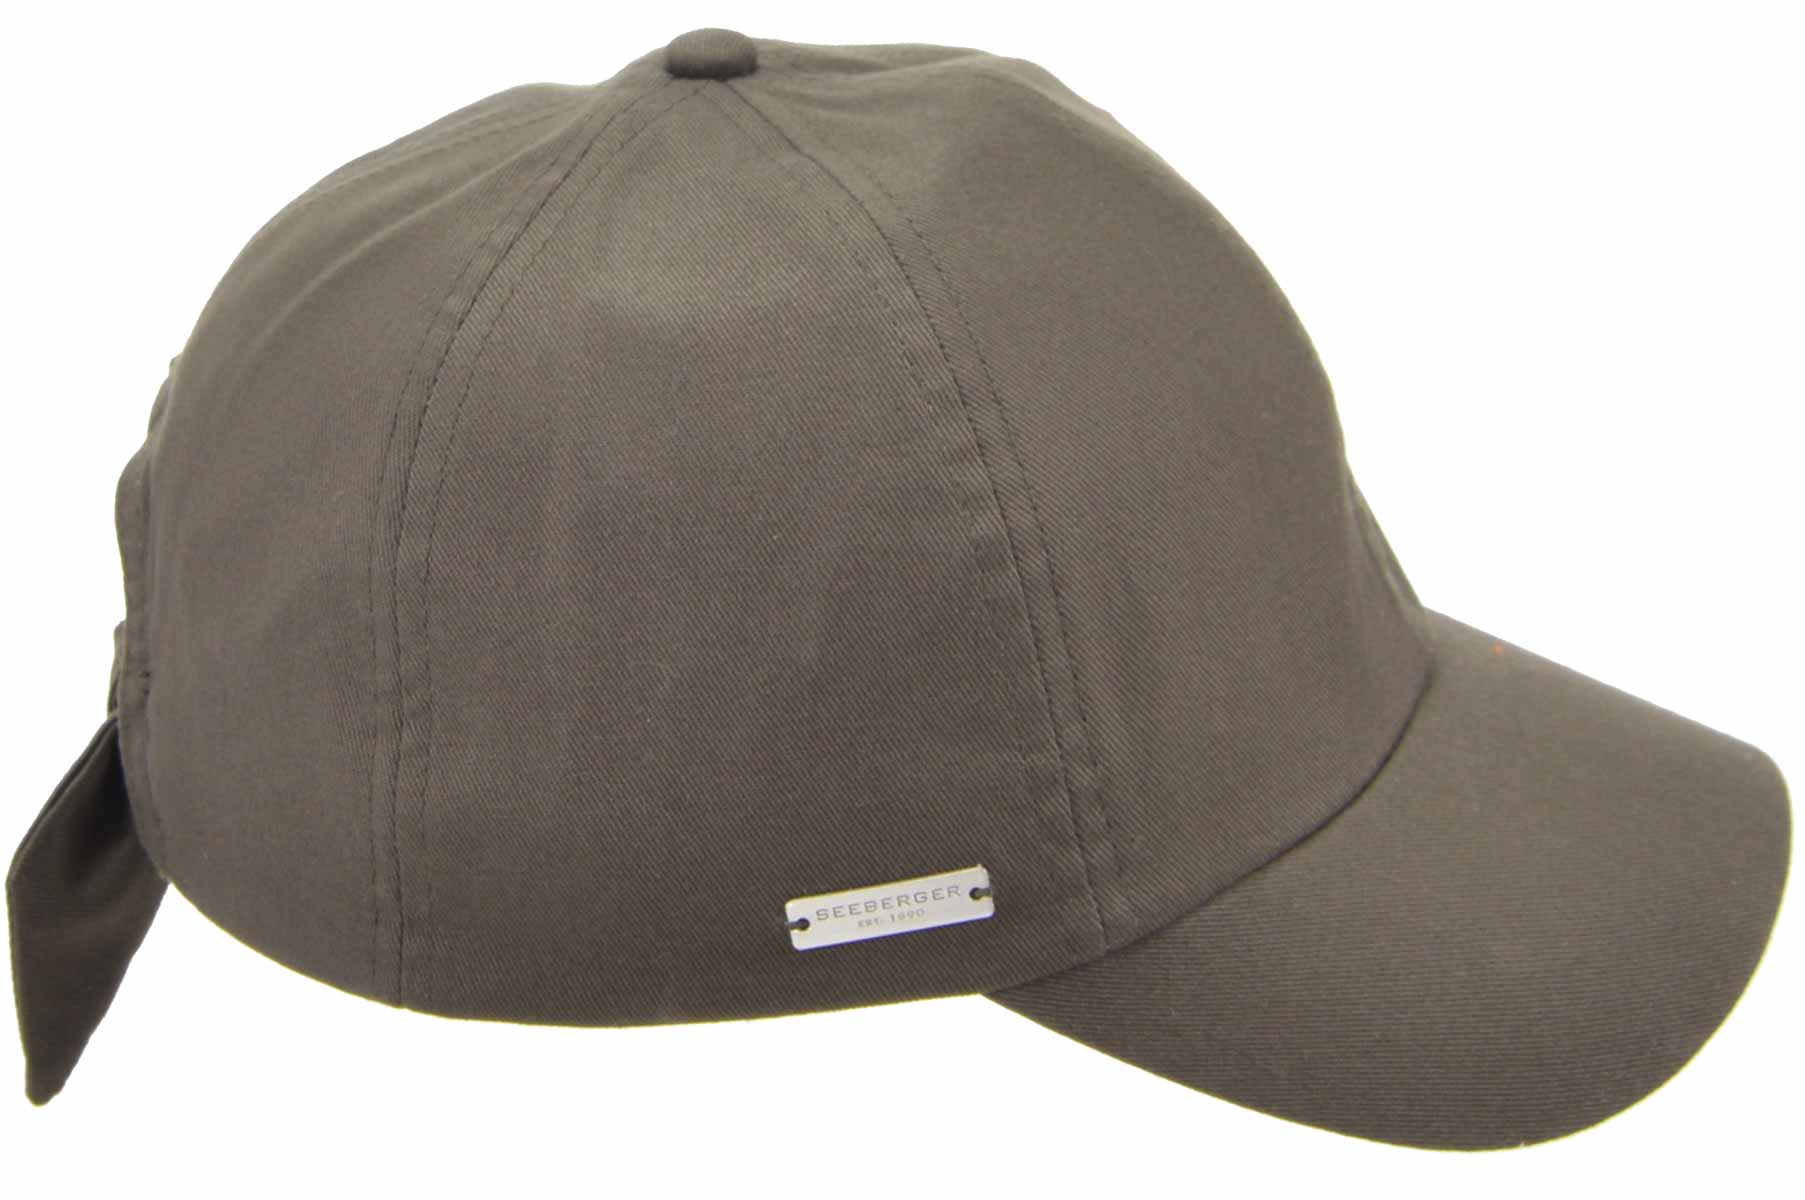 SEEBERGER Unisex Stoff Cap »Baumwollmütze bei online kaufen Baseballcap SEEBERGER HATS 55236-0«